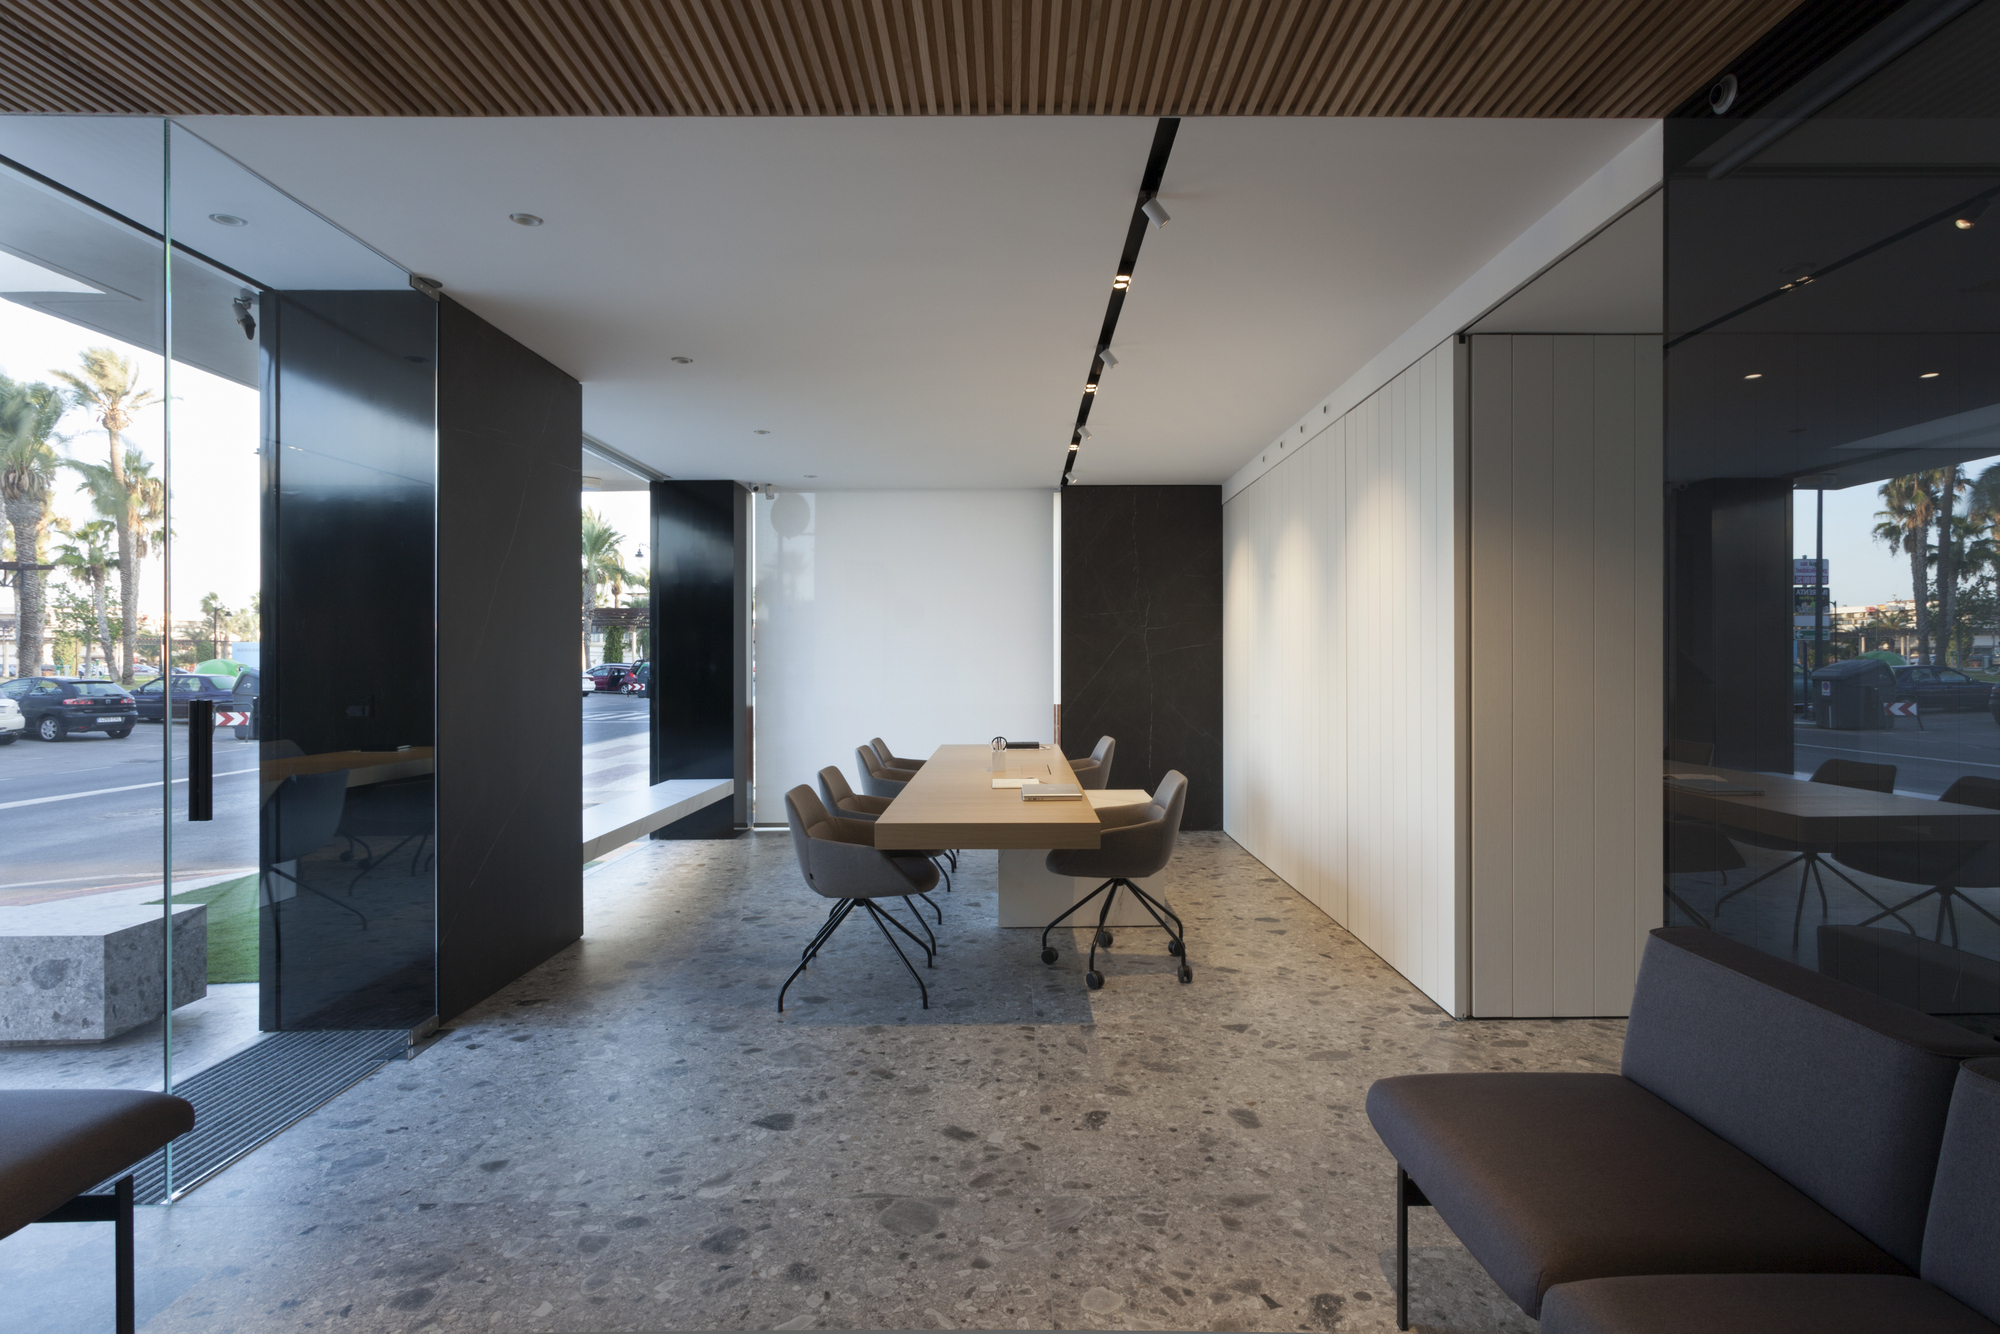 图片[5]|Allinone房地产集团办公室-穆尔西亚|ART-Arrakis | 建筑室内设计的创新与灵感